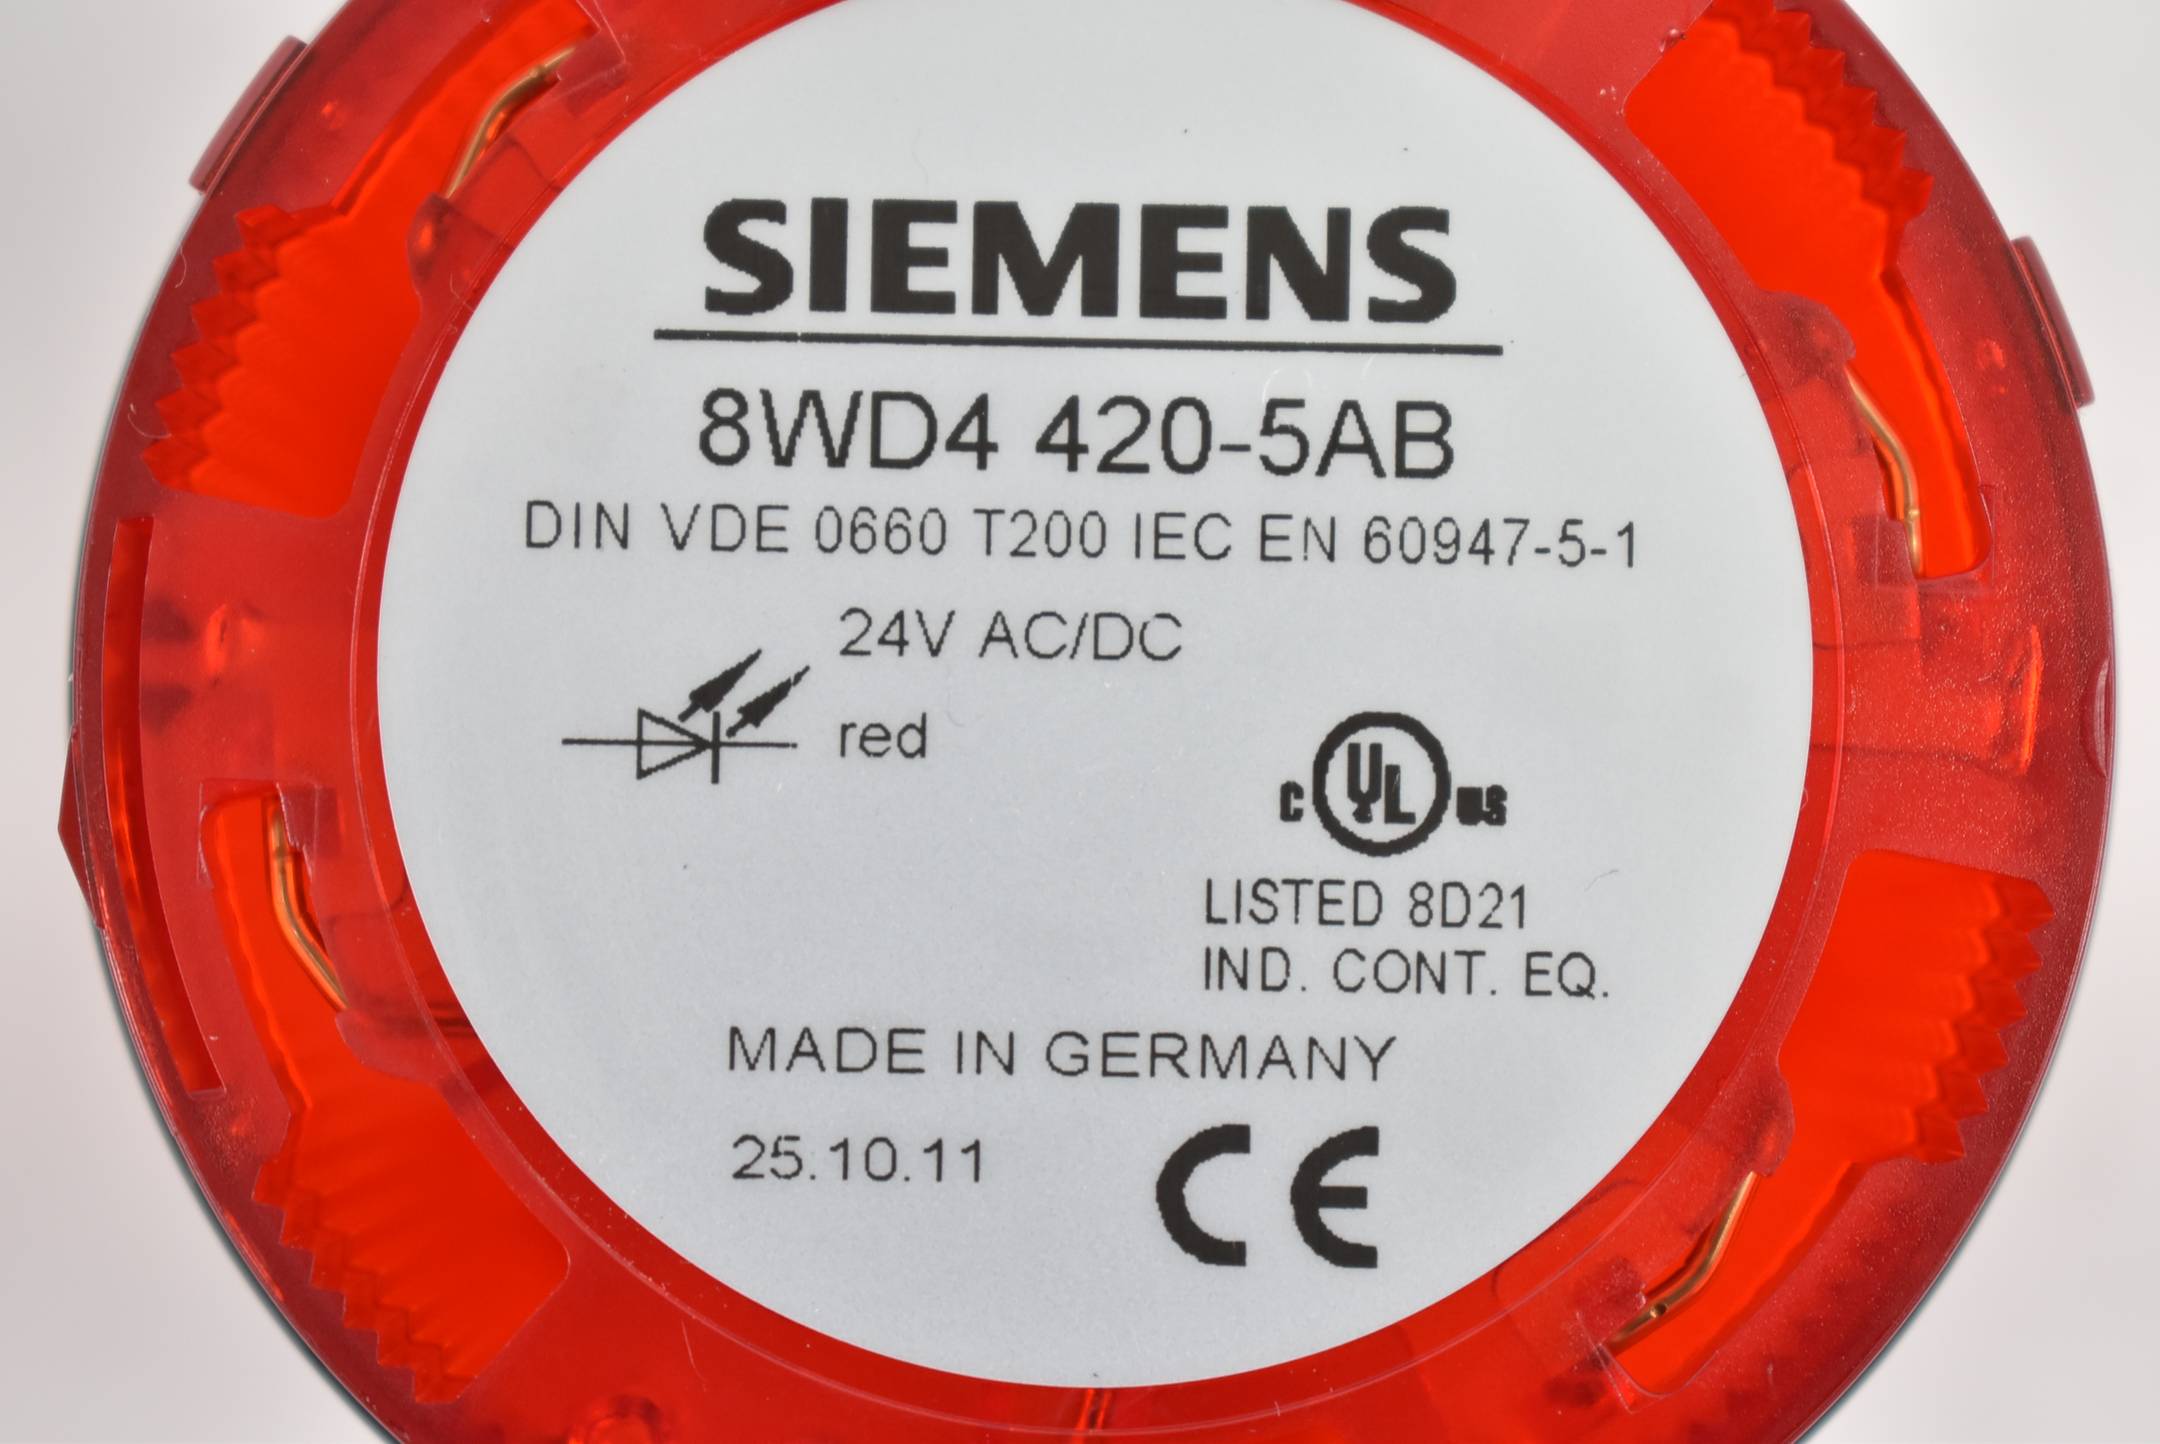 Siemens Signalleuchte 8WD4408-0AD + 8WD4420-5AE + 8WD4420-5AC + 8WD4420-5AB